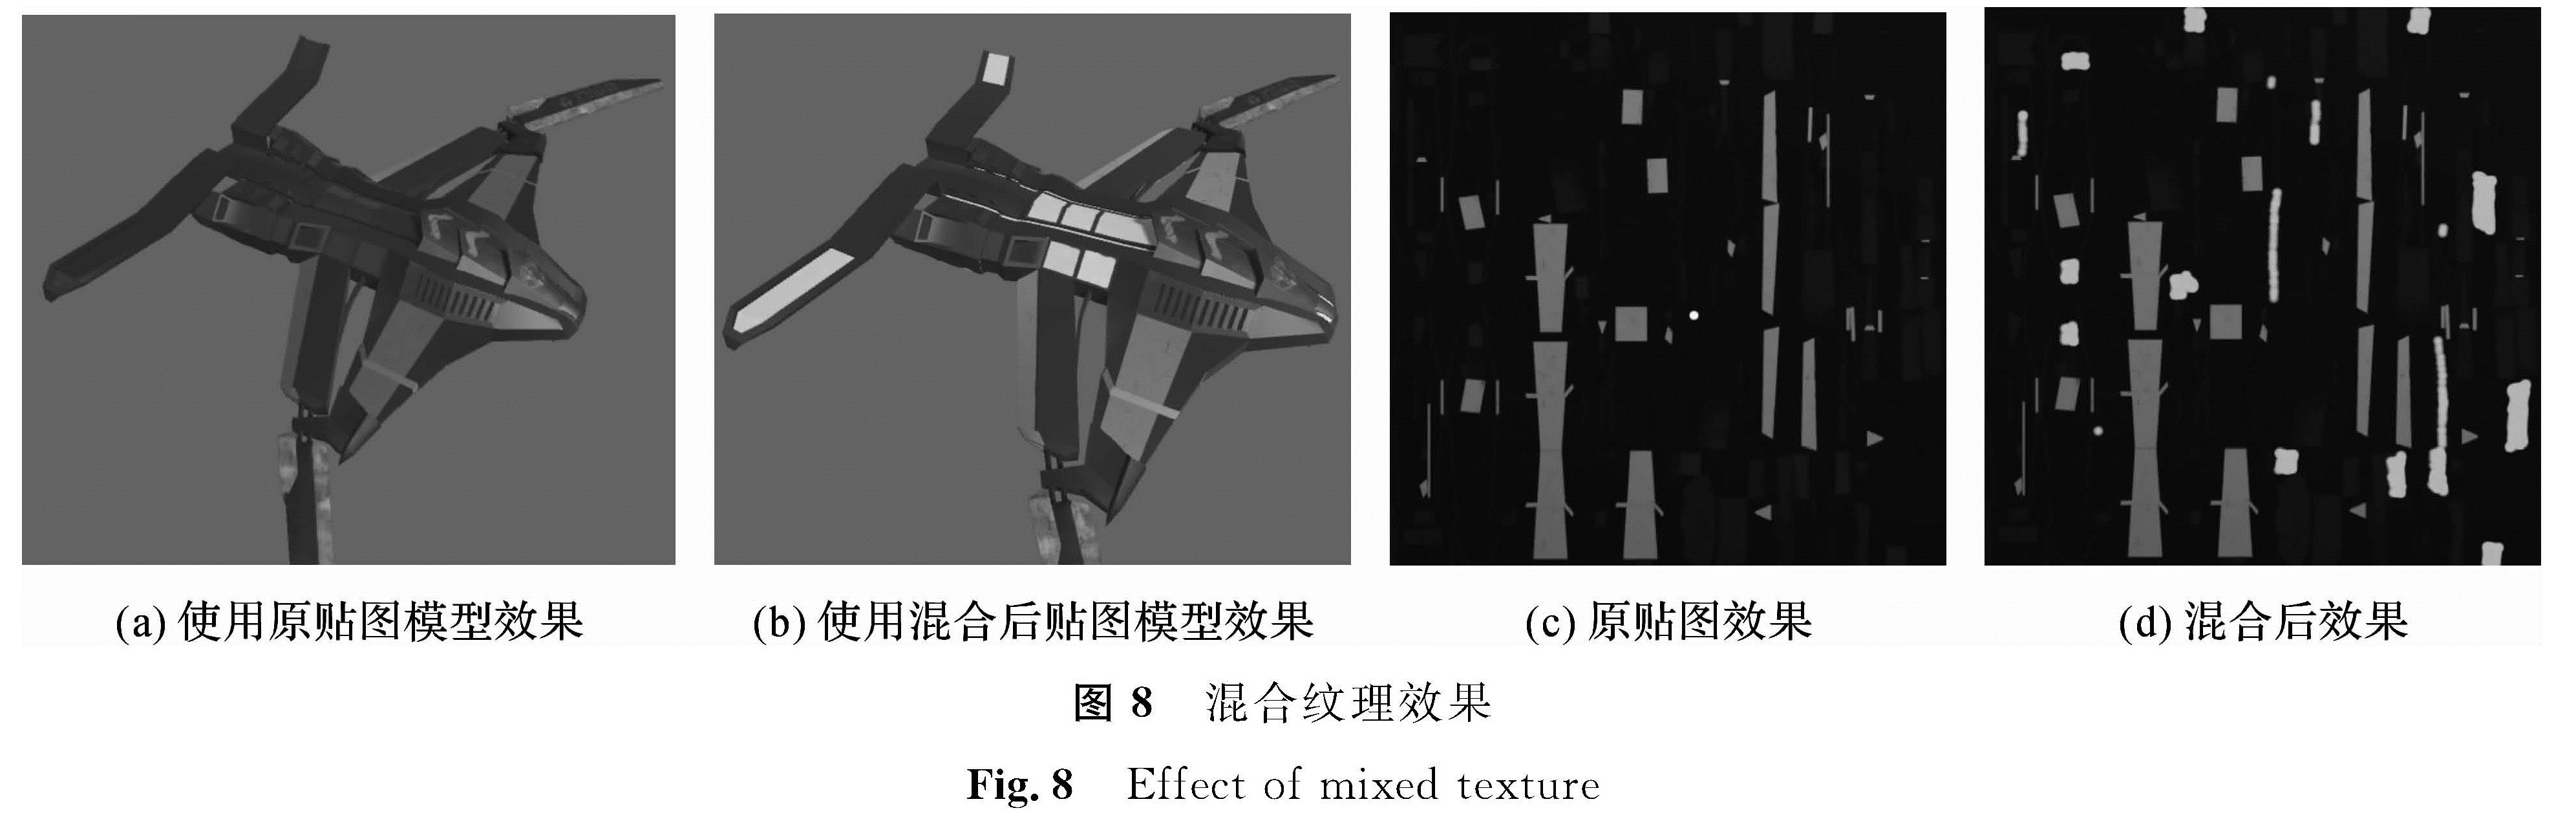 图8 混合纹理效果<br/>Fig.8 Effect of mixed texture